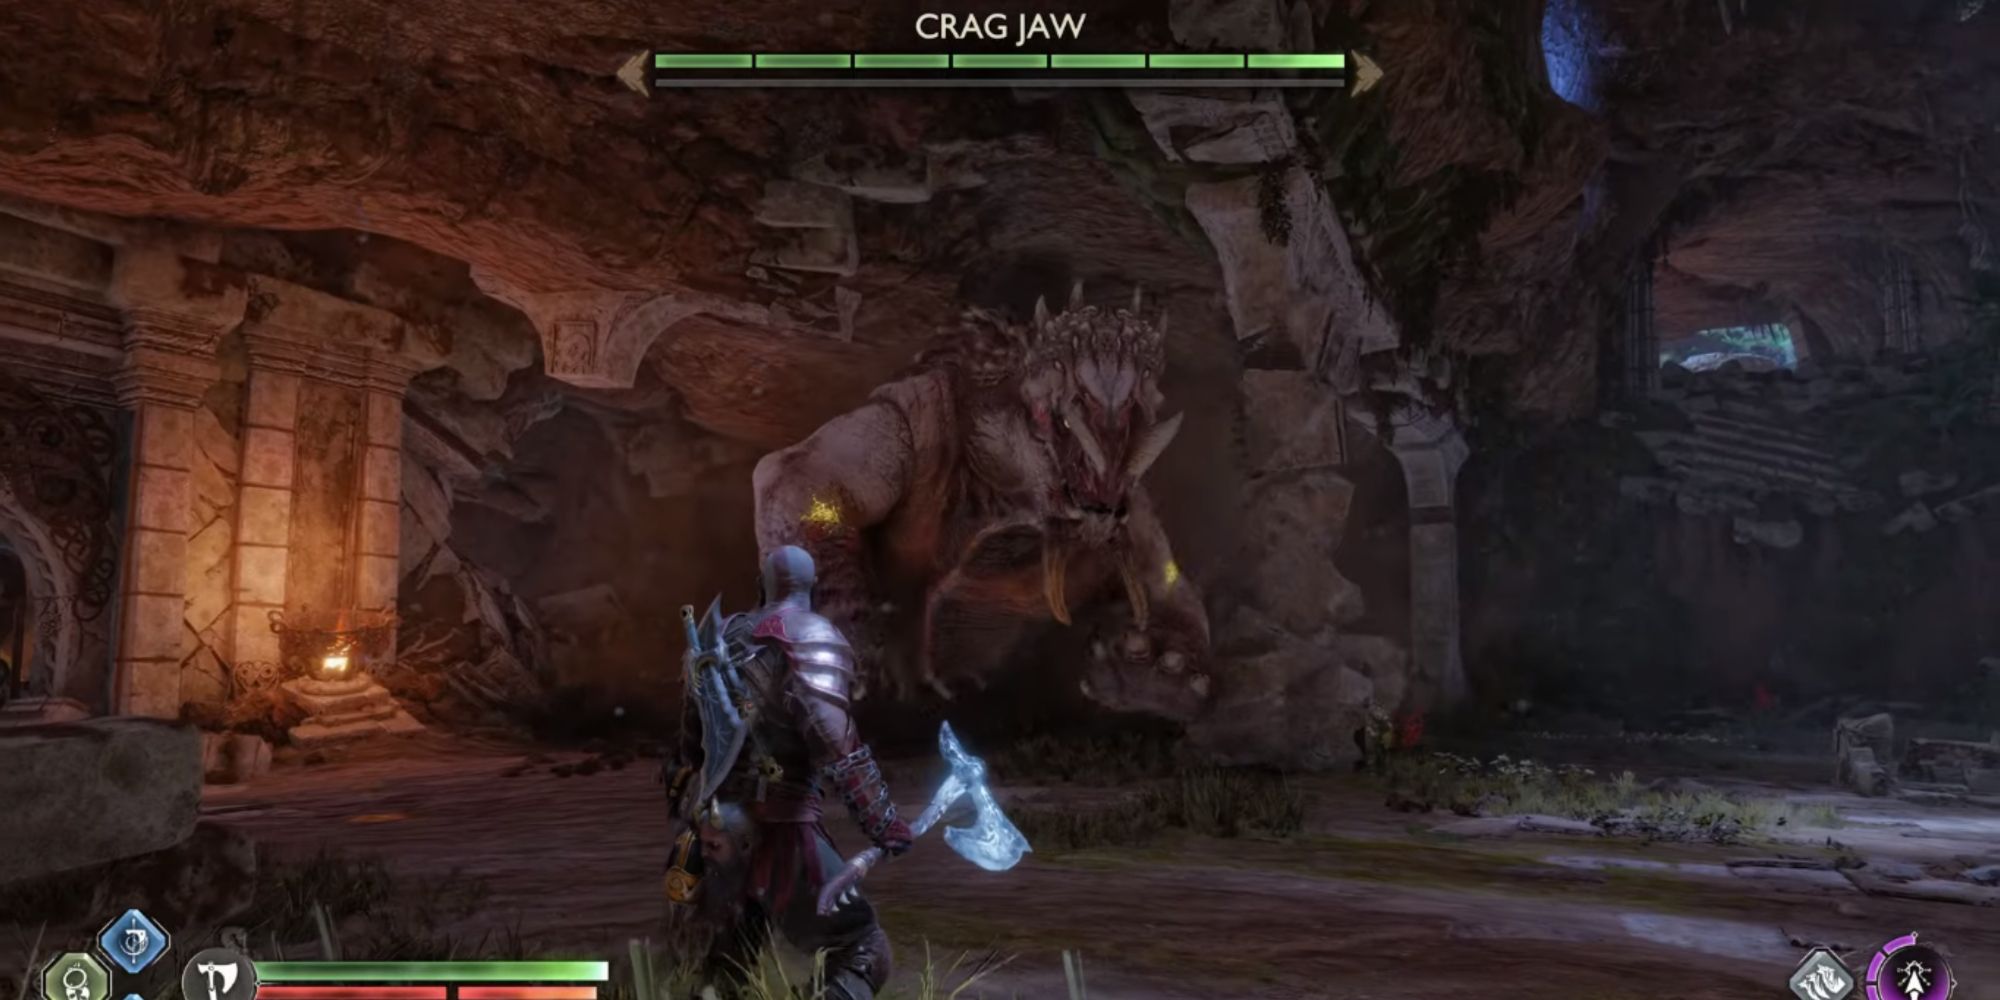 Image showing Kratos fighting Crag Jaw.